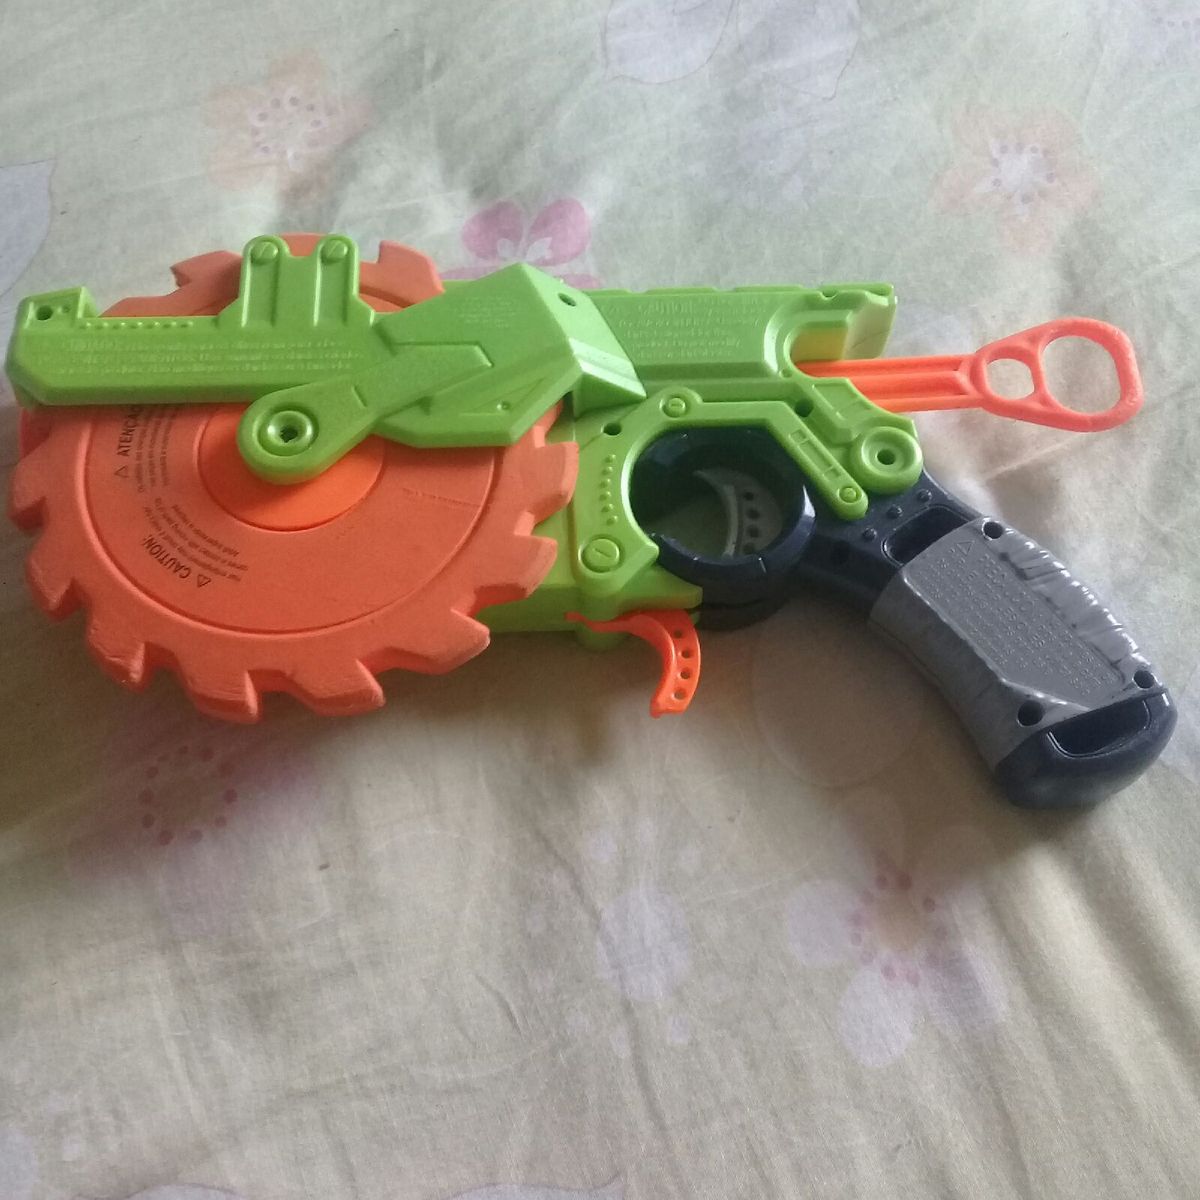 Arma de Brinquedo Nerf, Brinquedo Nerf Usado 87968513